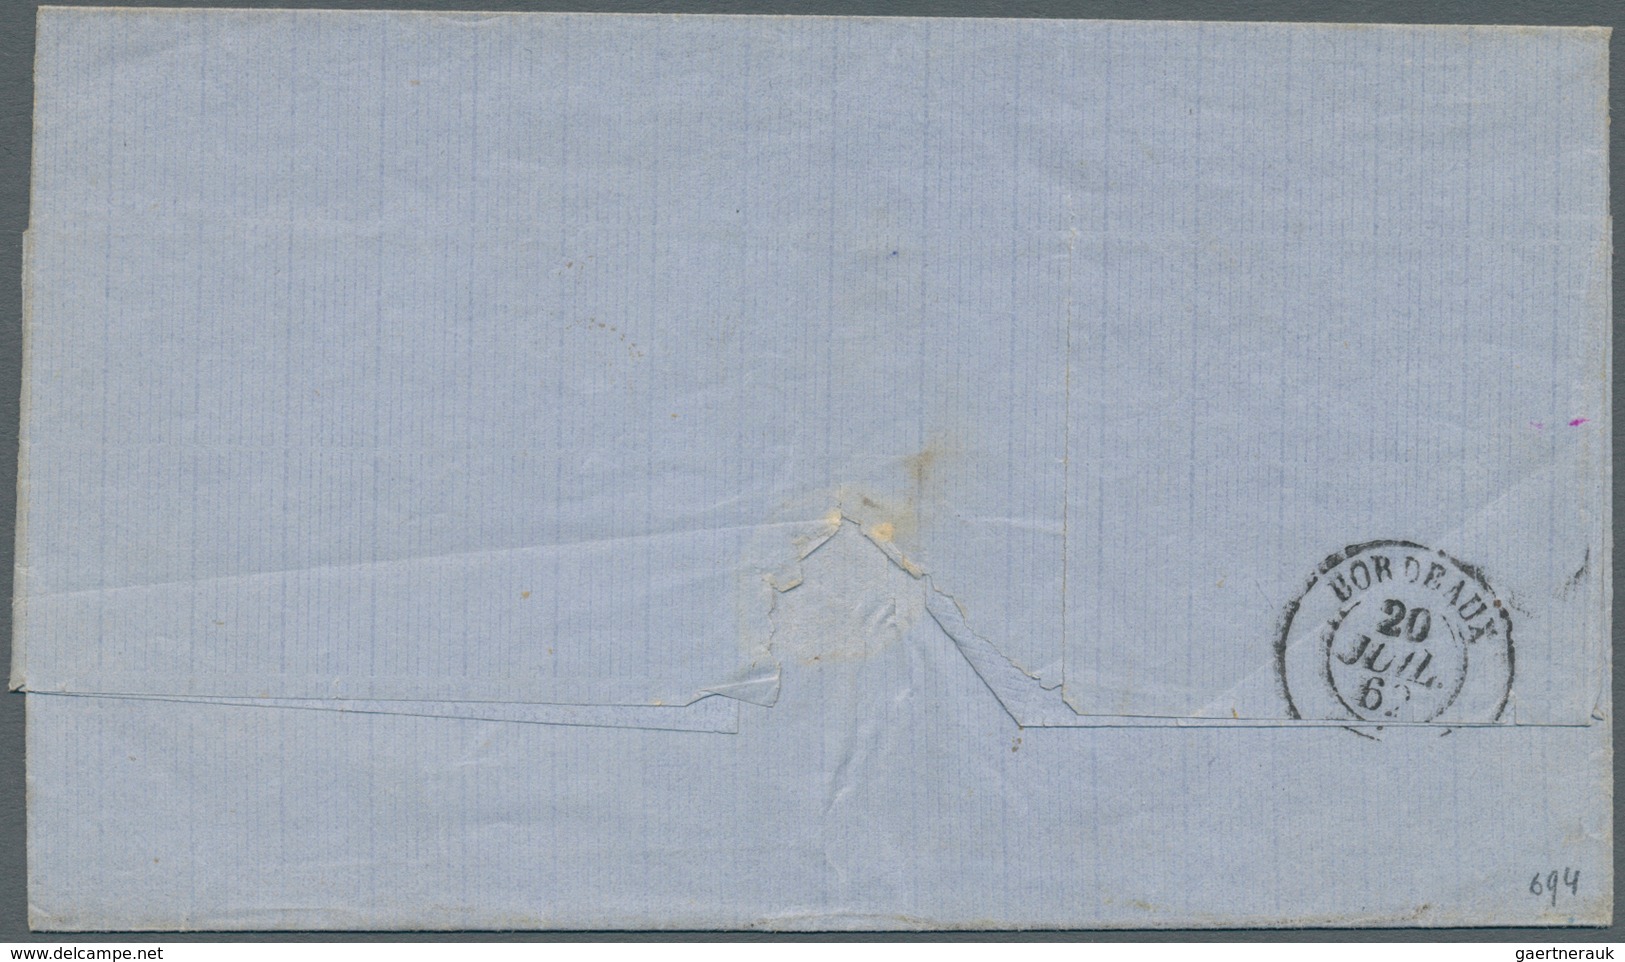 11741 Brasilien - Vorphilatelie: 1862, Folded Letter Cover From Rio De Janeiro, On The Frontside Octagonal - Vorphilatelie